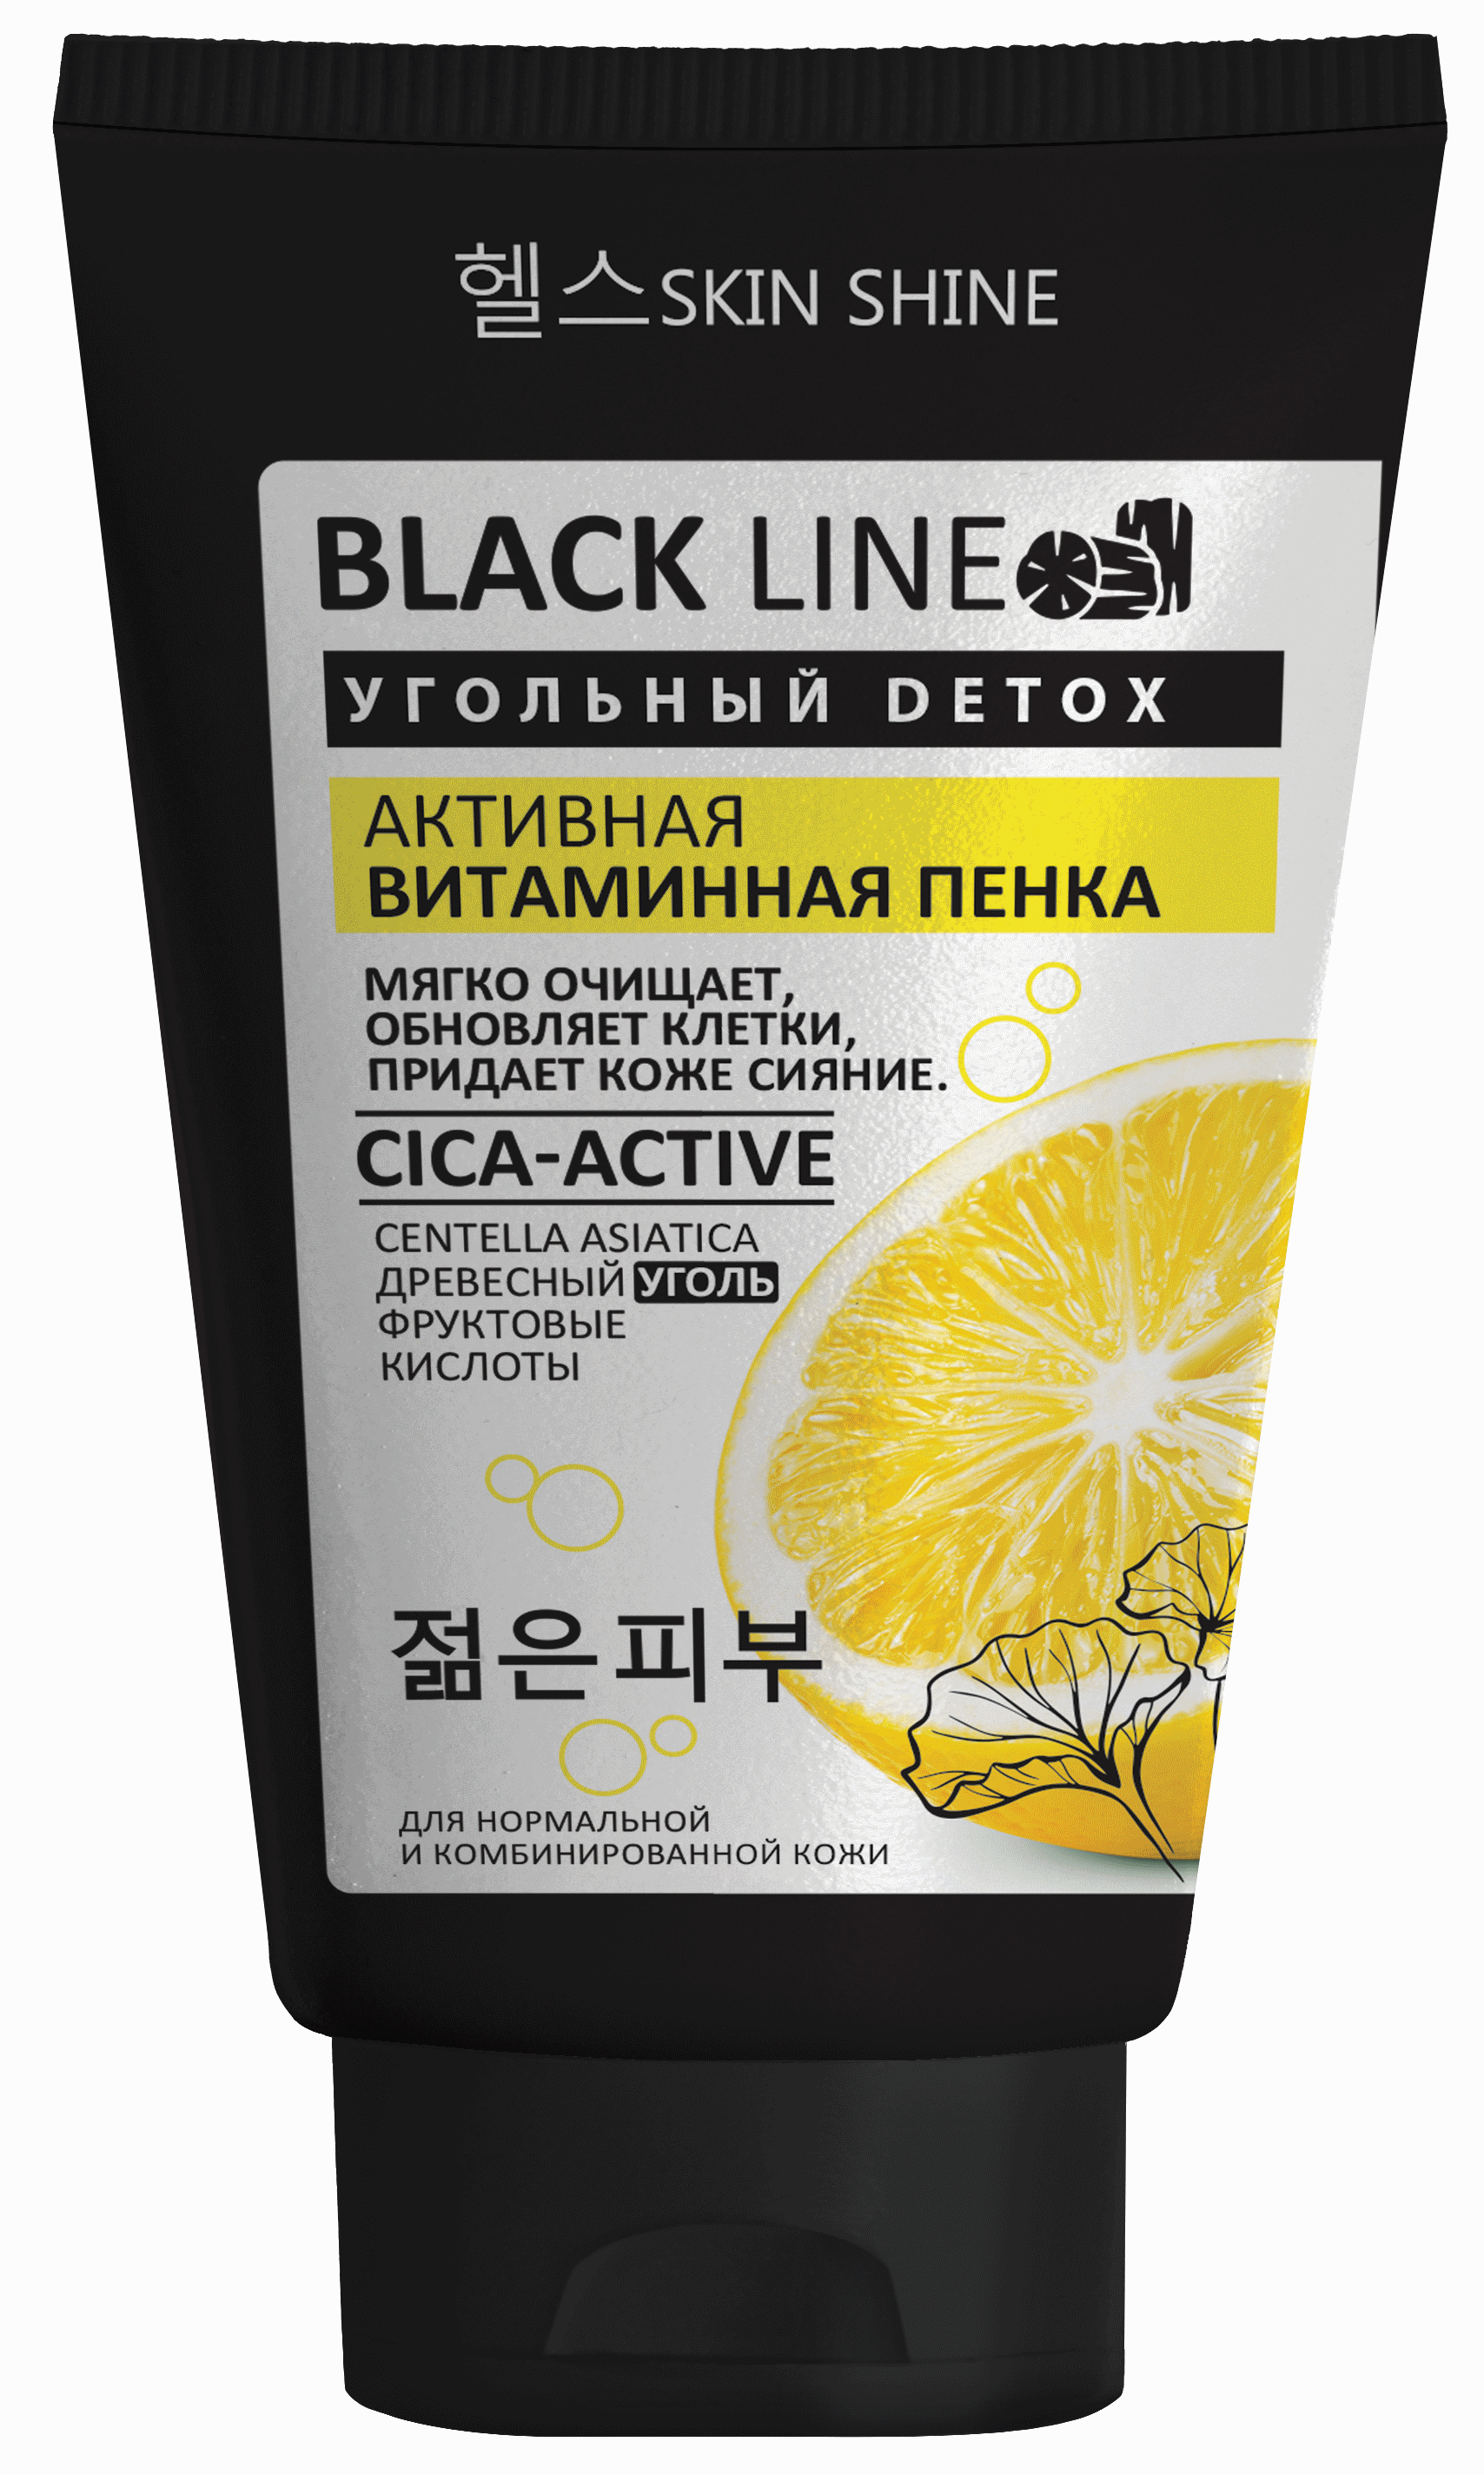 Картинка SKIN SHINE серии «BLACK LINE» Активная витаминная пенка для умывания  с древесным углем, центеллой азиатской, фруктовыми кислотами, 150 мл BeautyConceptPro